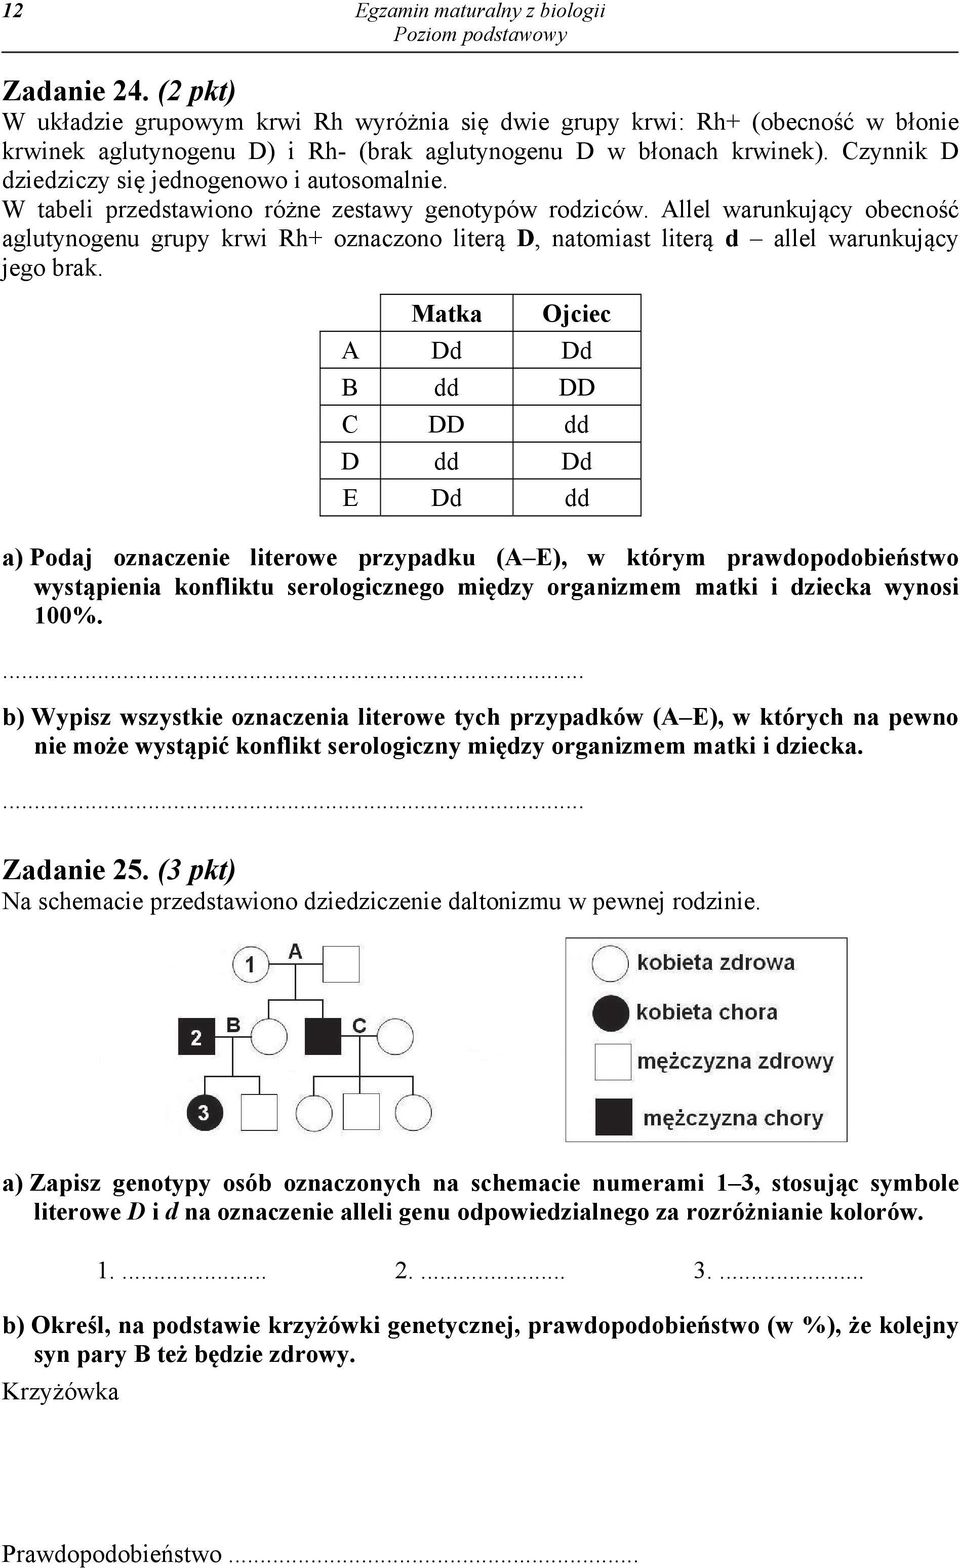 Czynnik D dziedziczy się jednogenowo i autosomalnie. W tabeli przedstawiono różne zestawy genotypów rodziców.